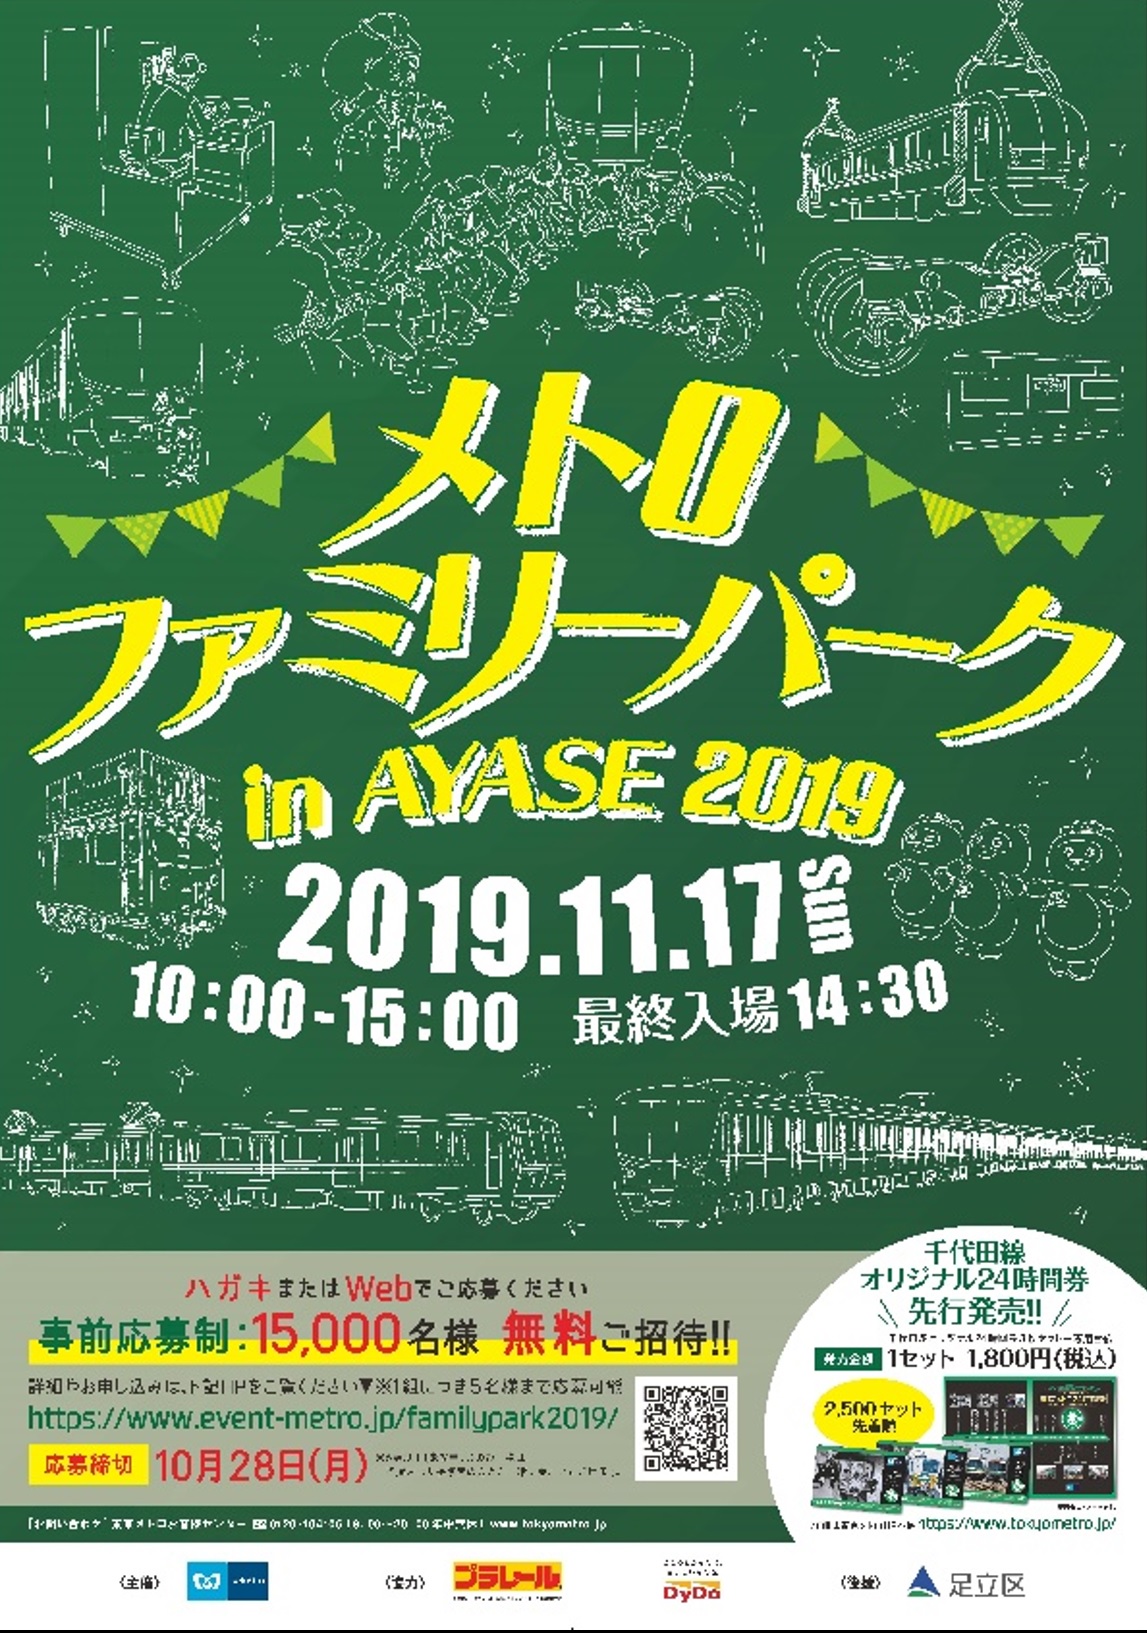 車両基地イベント メトロファミリーパークin Ayase 19 を開催します 東京メトロのプレスリリース